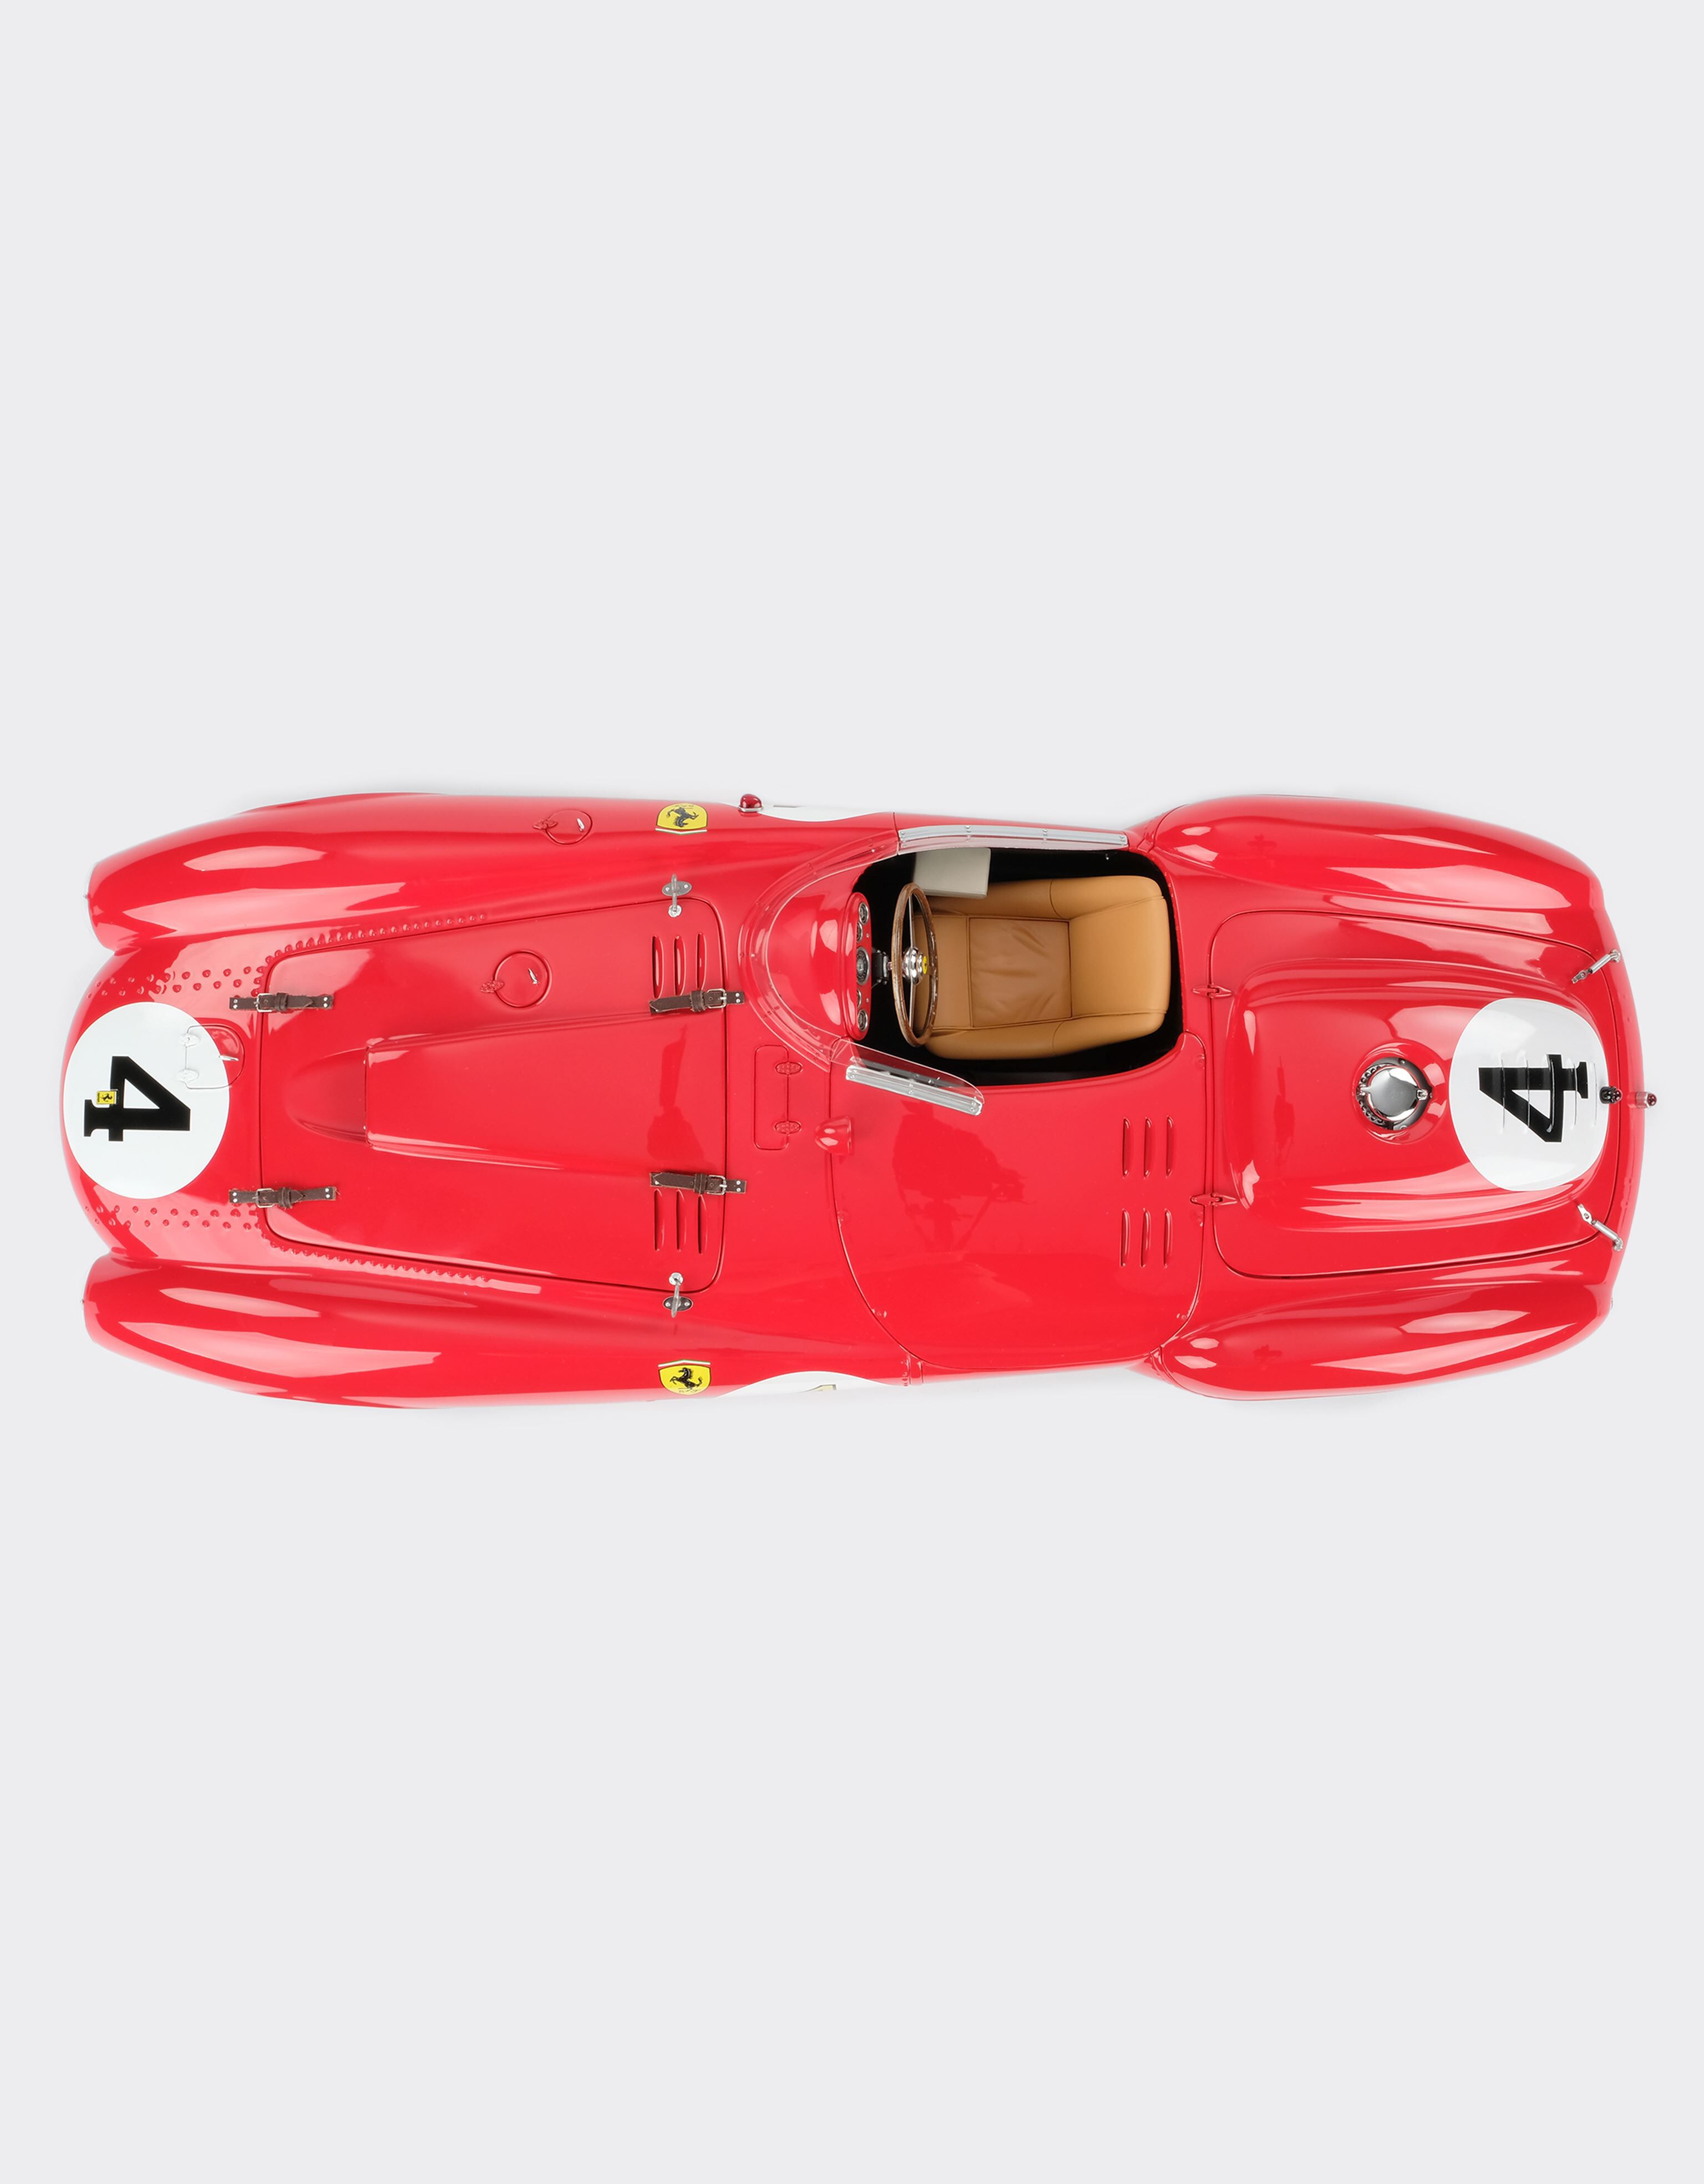 Ferrari Ferrari 375 Plus 1st ル・マン モデルカー 1:8スケール レッド L5241f